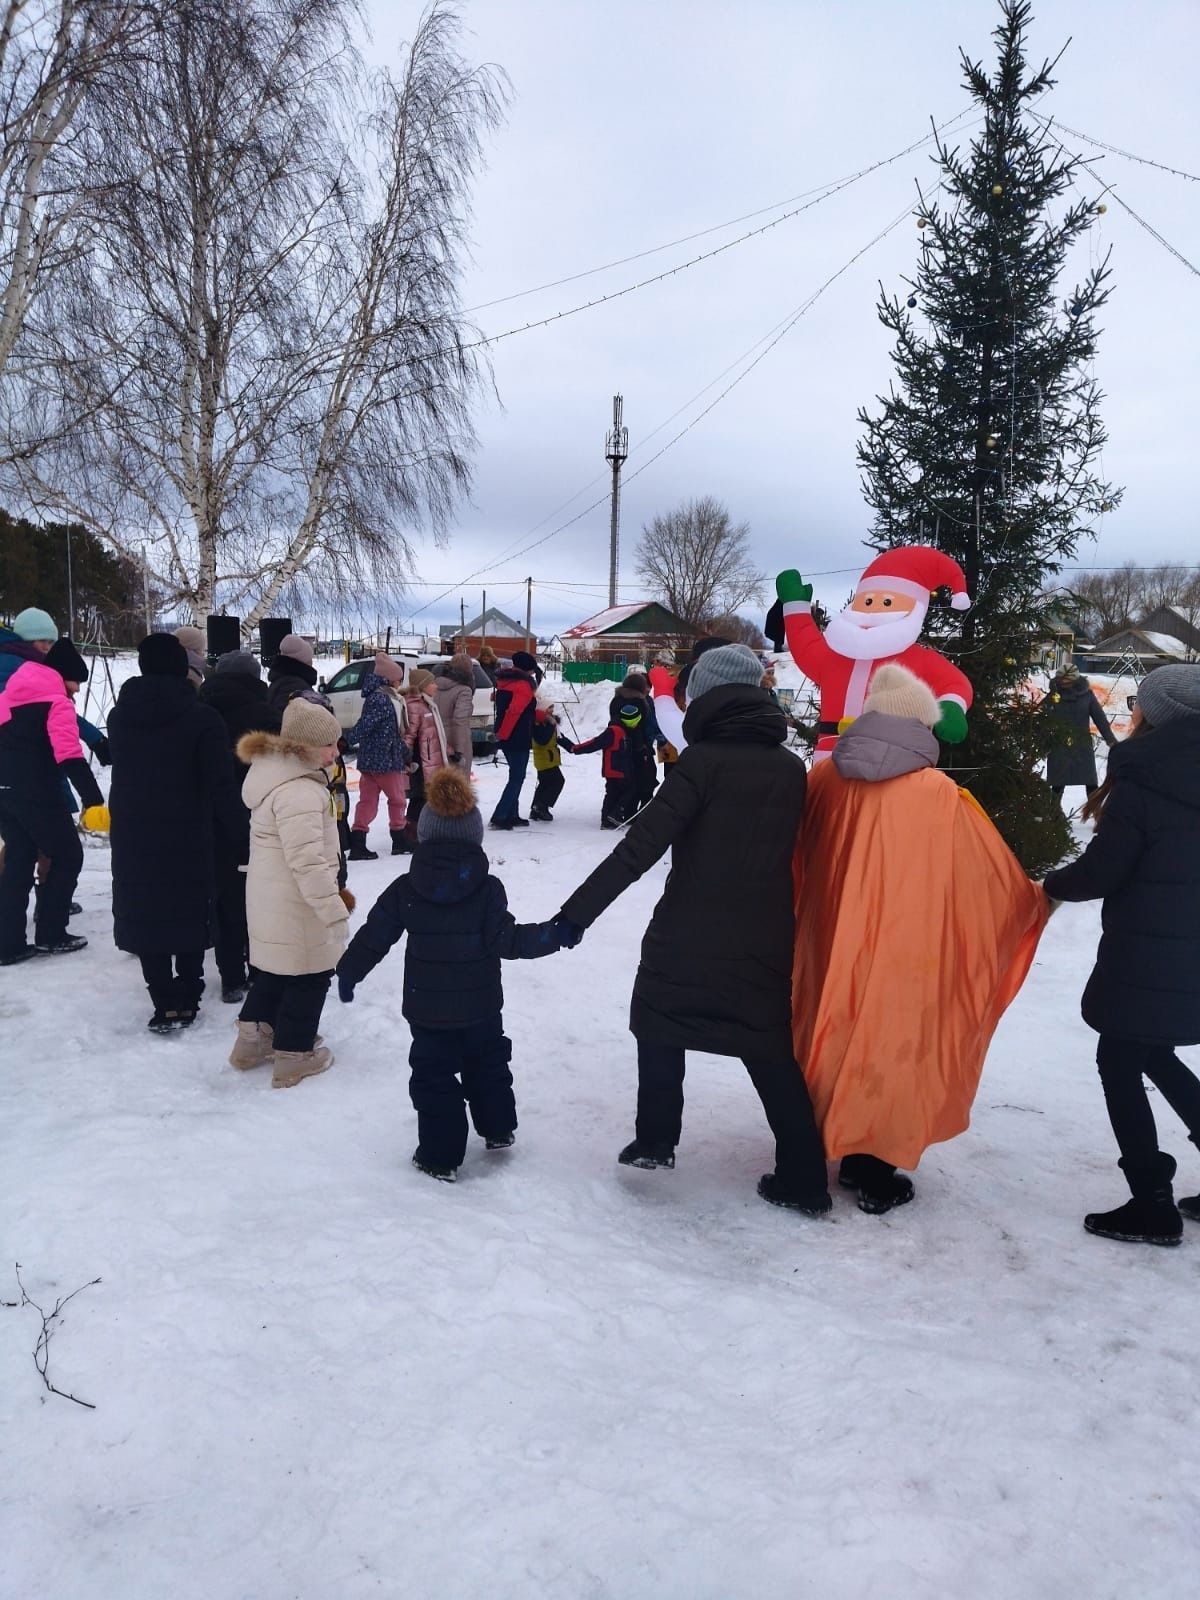 Новогоднее оформление Нурлата оценила комиссия из Казани